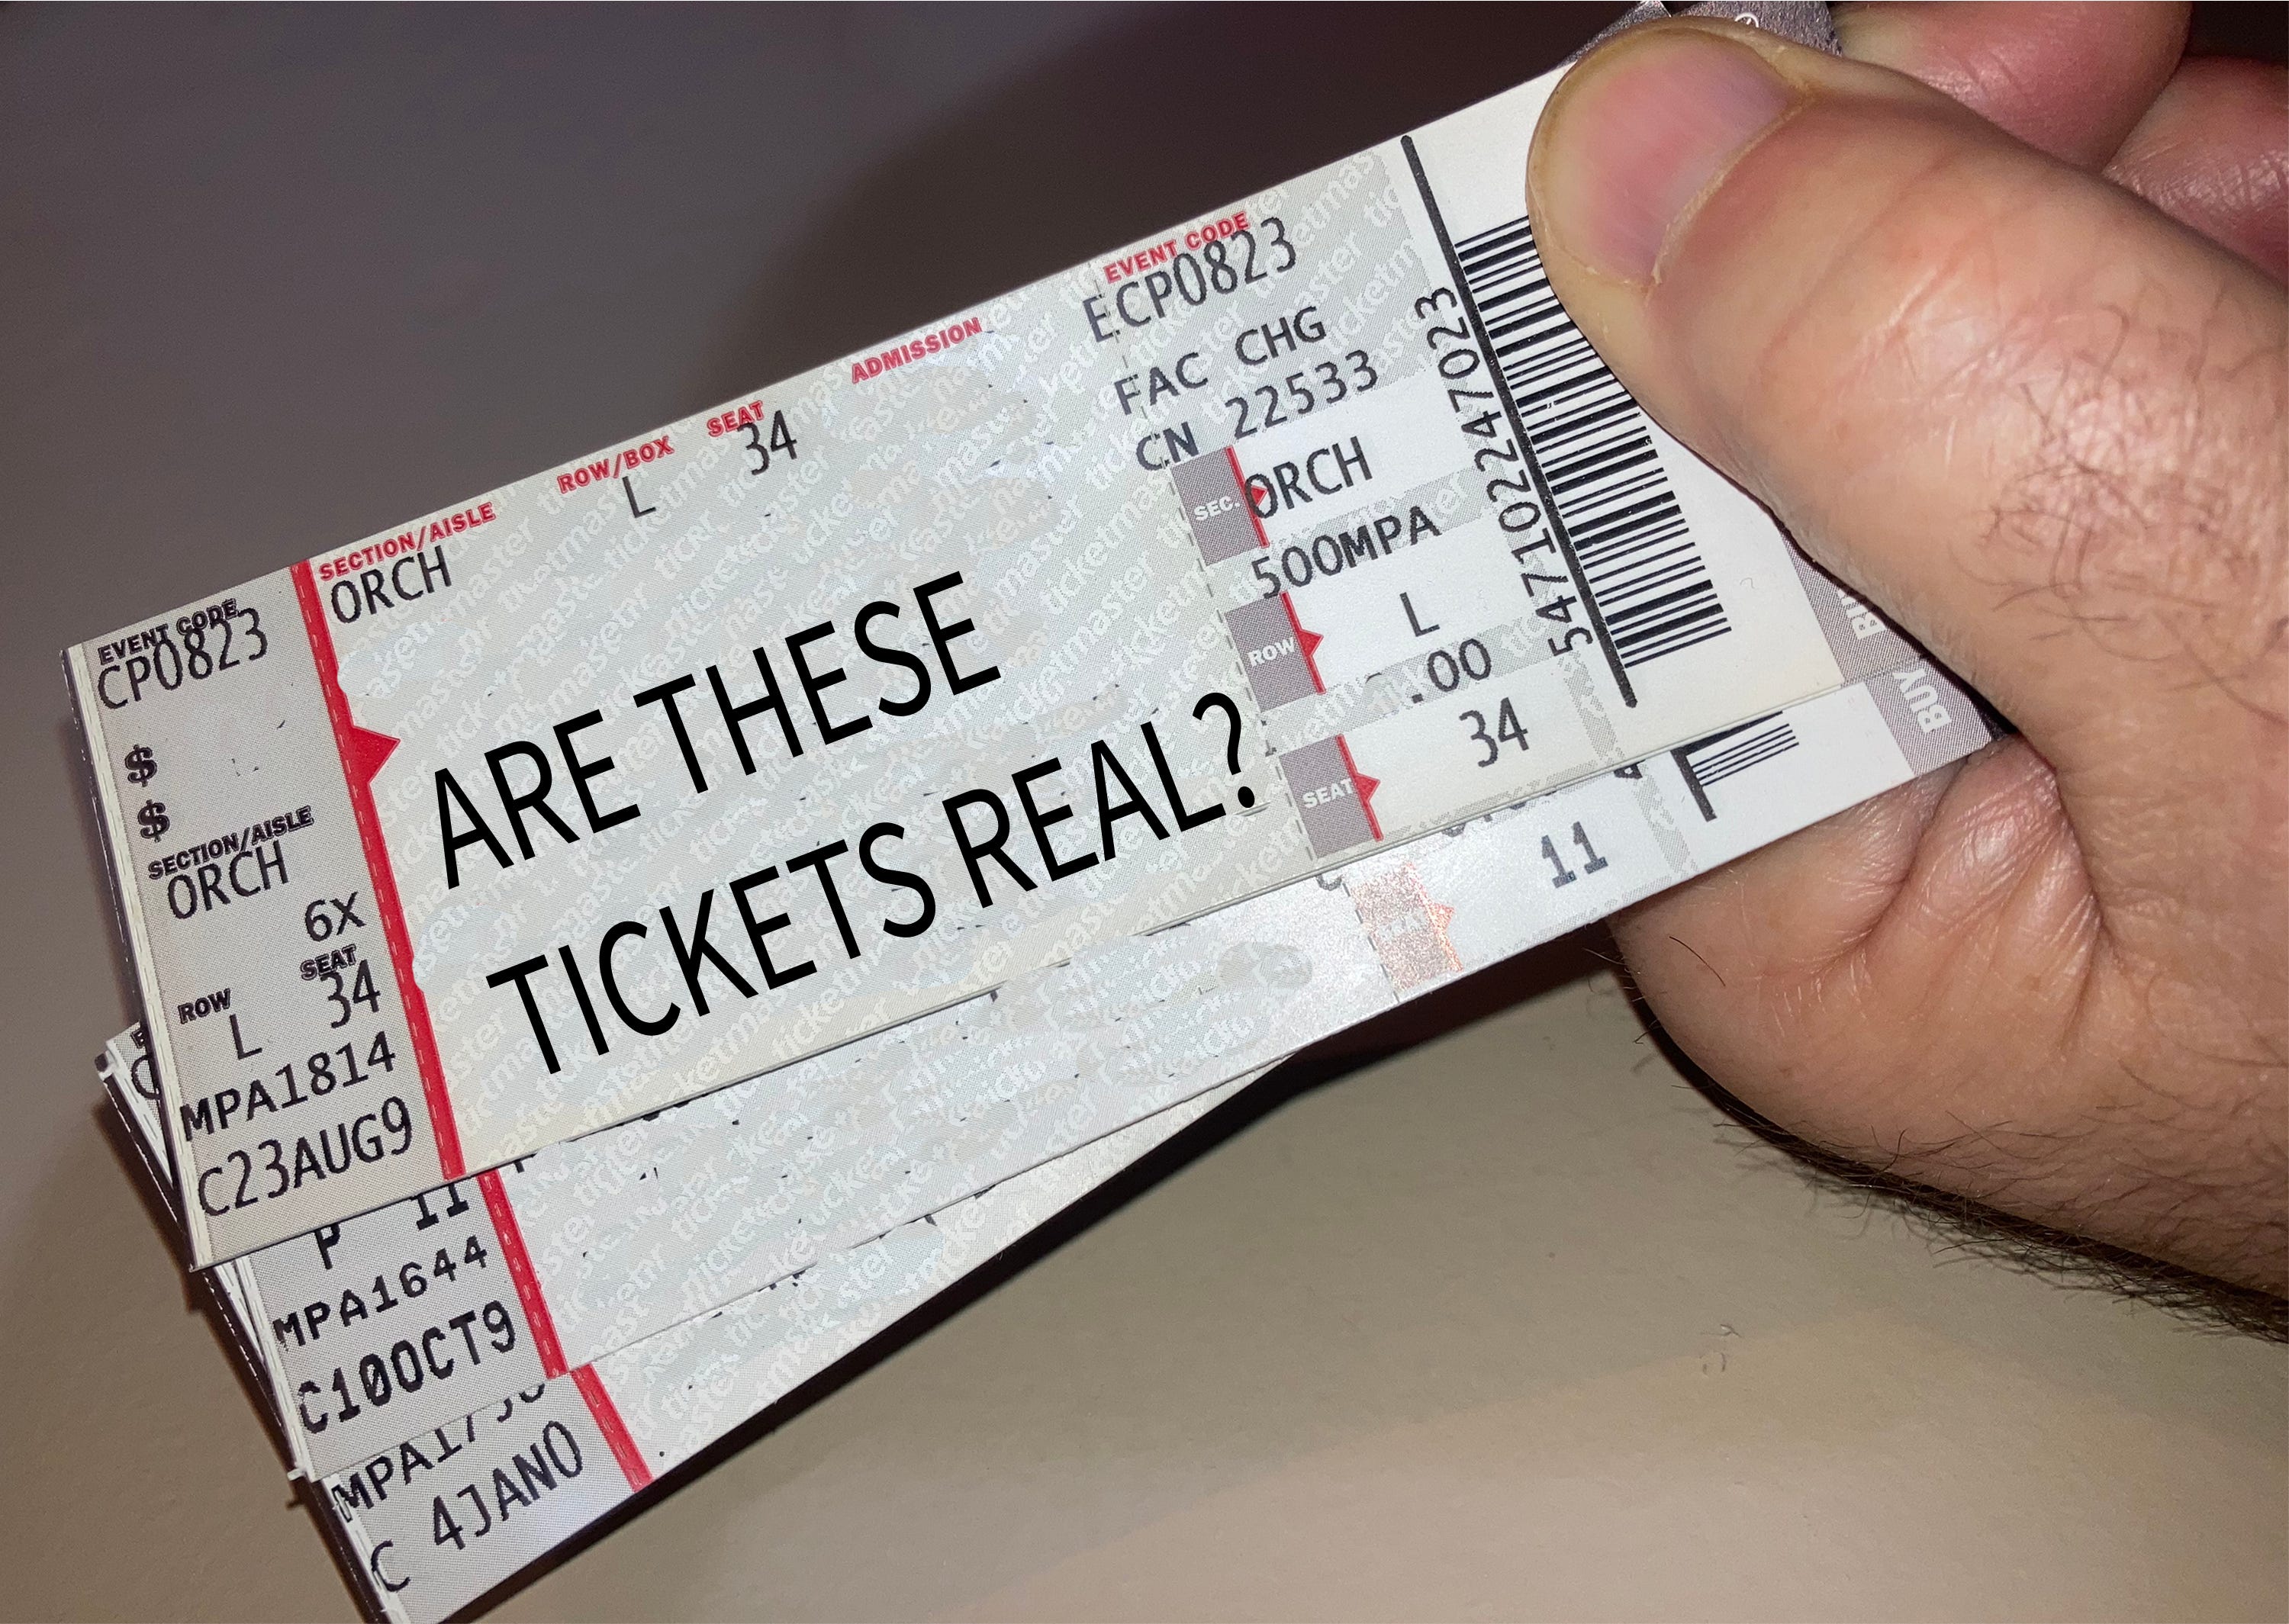 bloemblad Terughoudendheid Parel Alabama venues warn guests to beware of ticket scalpers